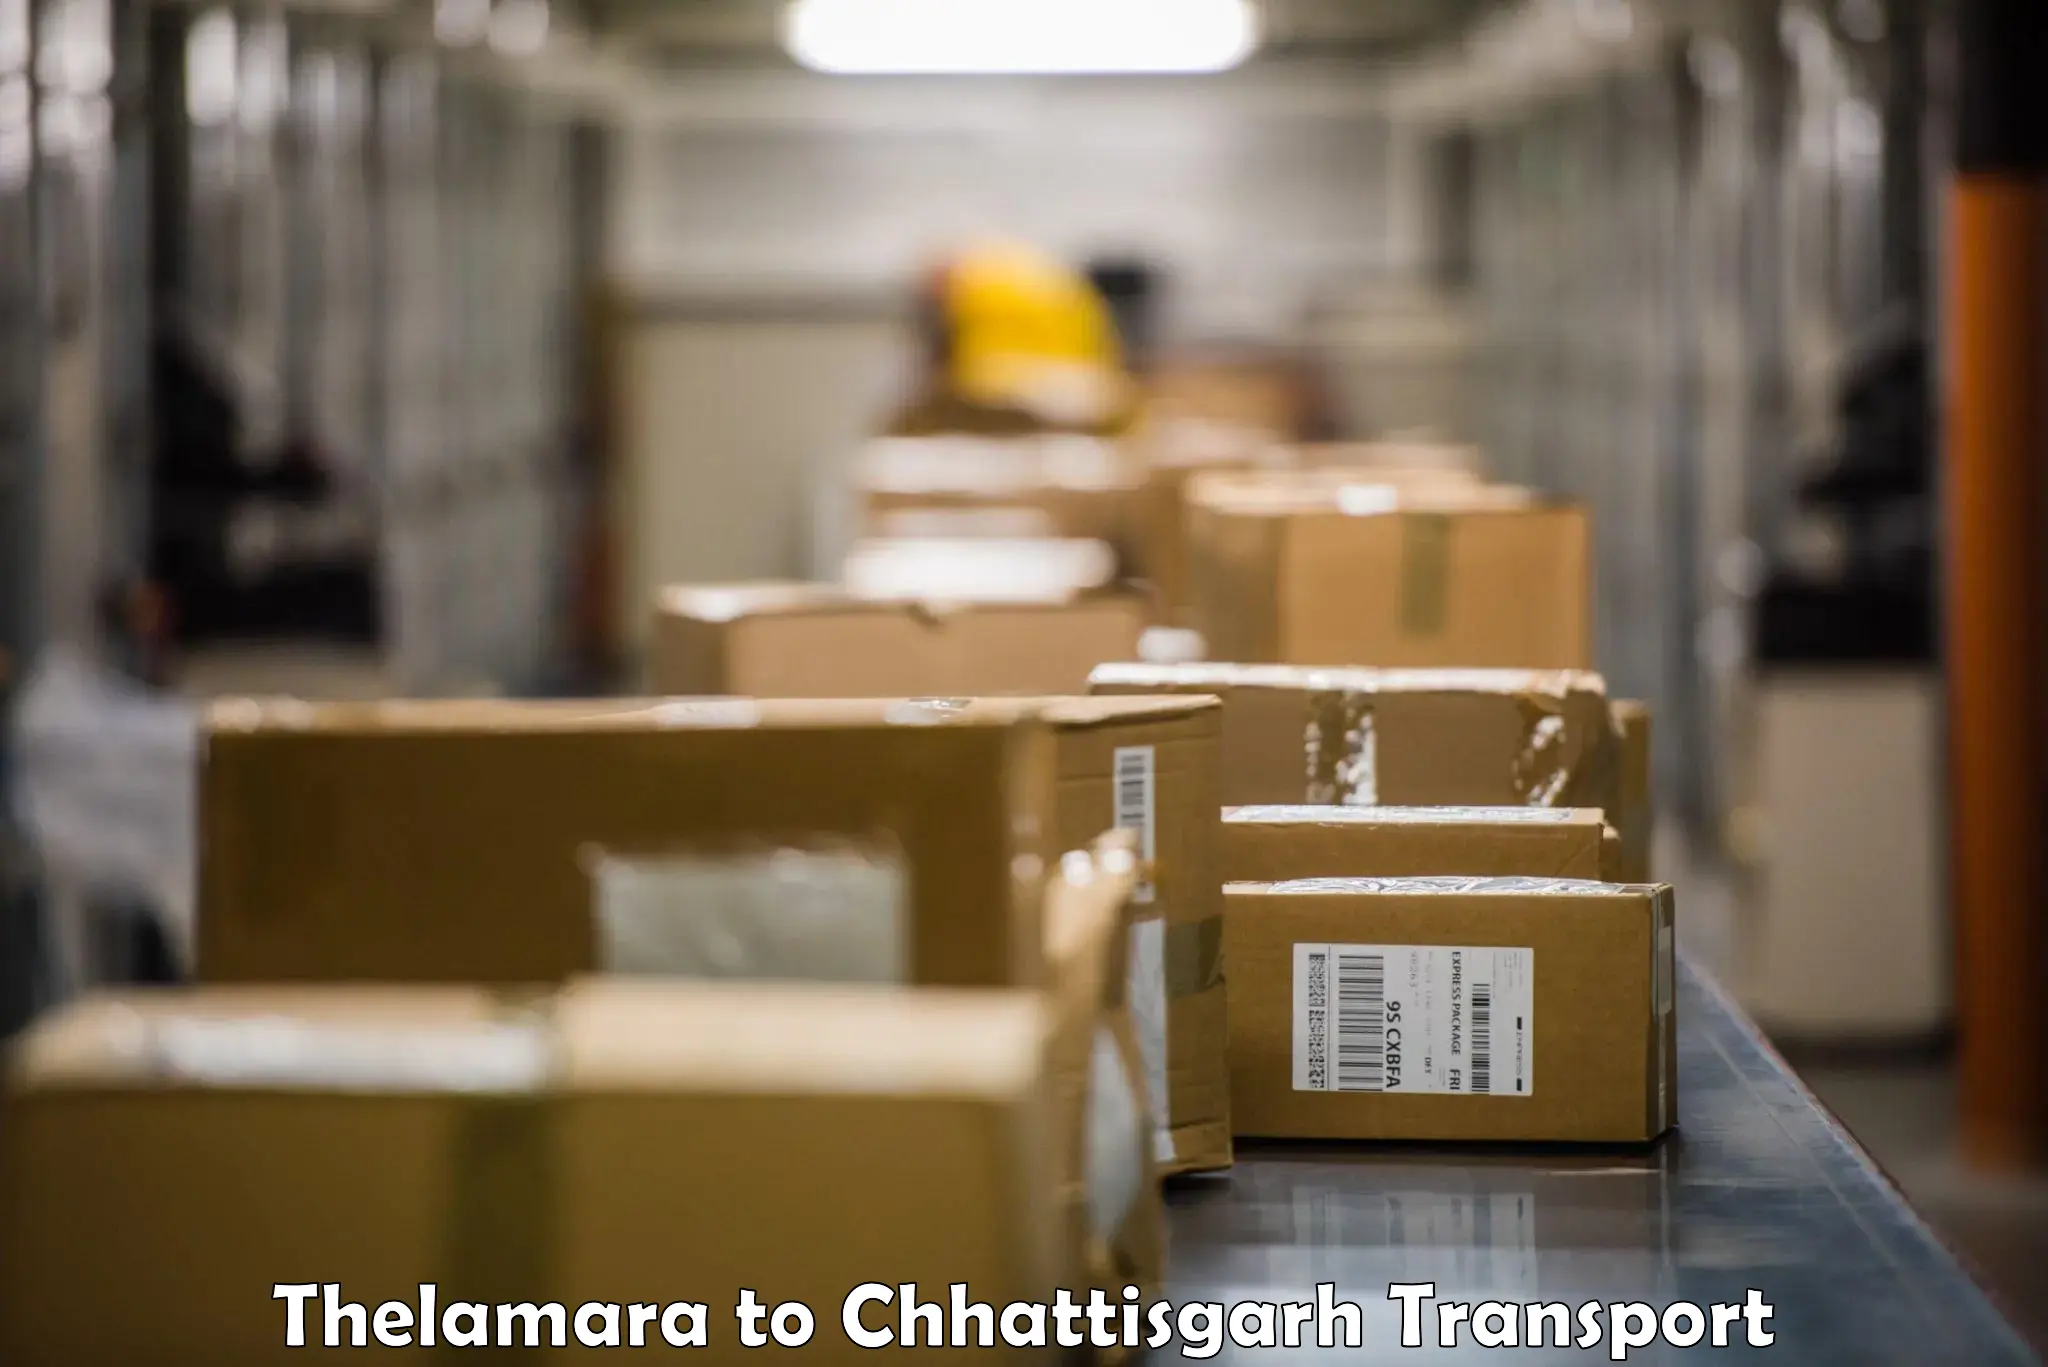 Furniture transport service Thelamara to Pakhanjur